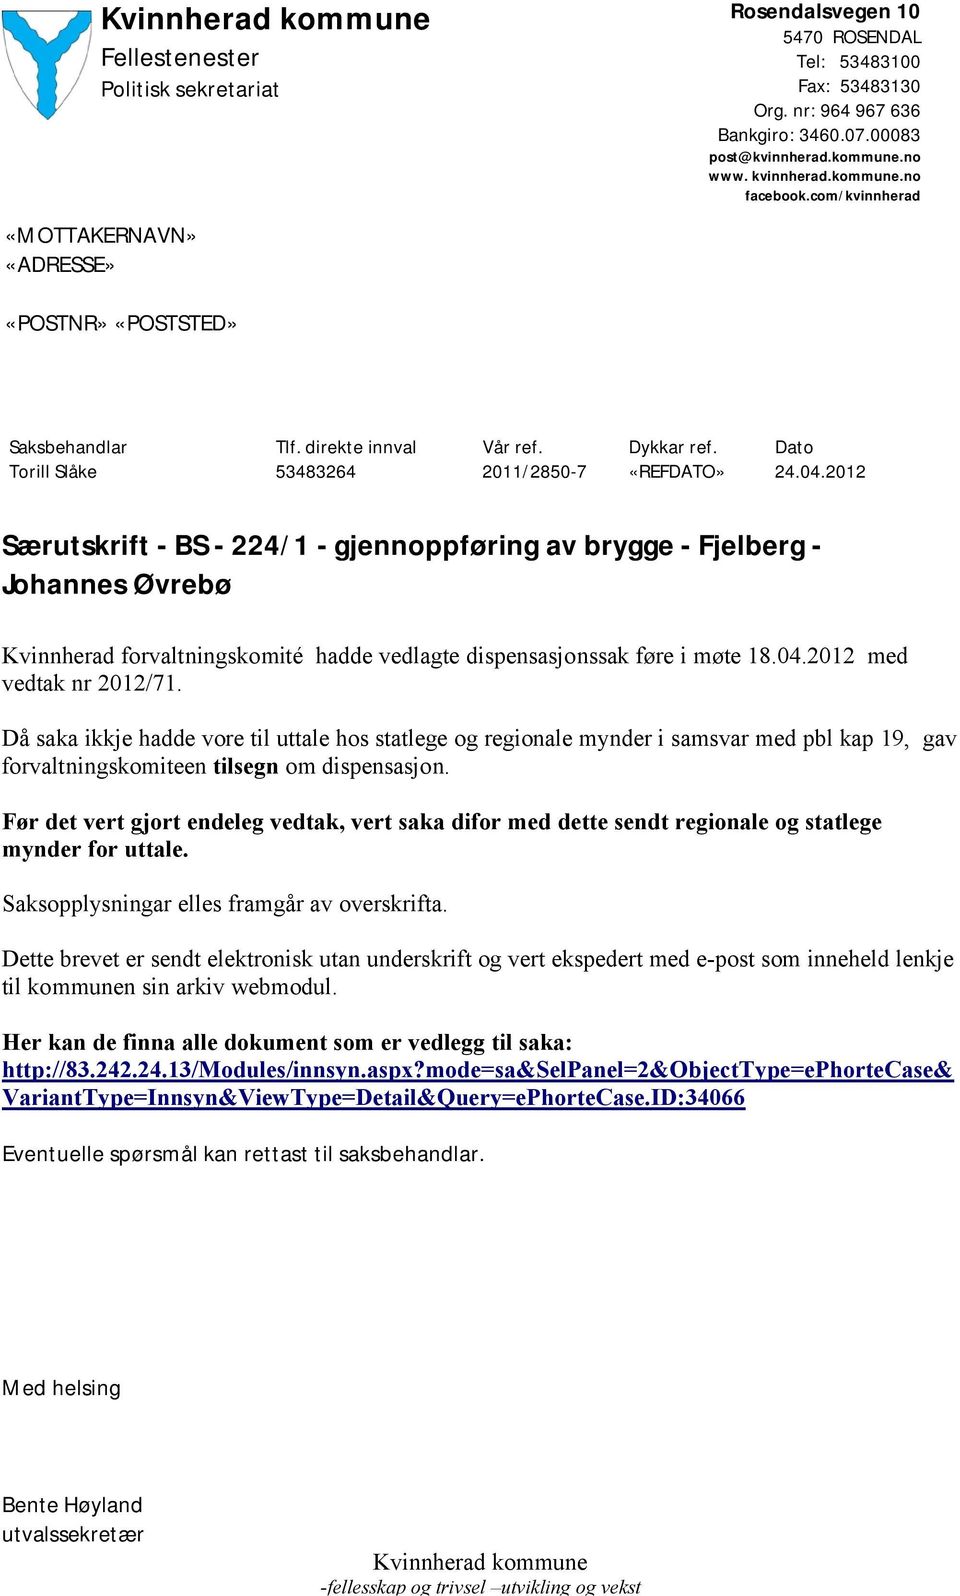 2012 Særutskrift - BS - 224/1 - gjennoppføring av brygge - Fjelberg - Johannes Øvrebø Kvinnherad forvaltningskomité hadde vedlagte dispensasjonssak føre i møte 18.04.2012 med vedtak nr 2012/71.